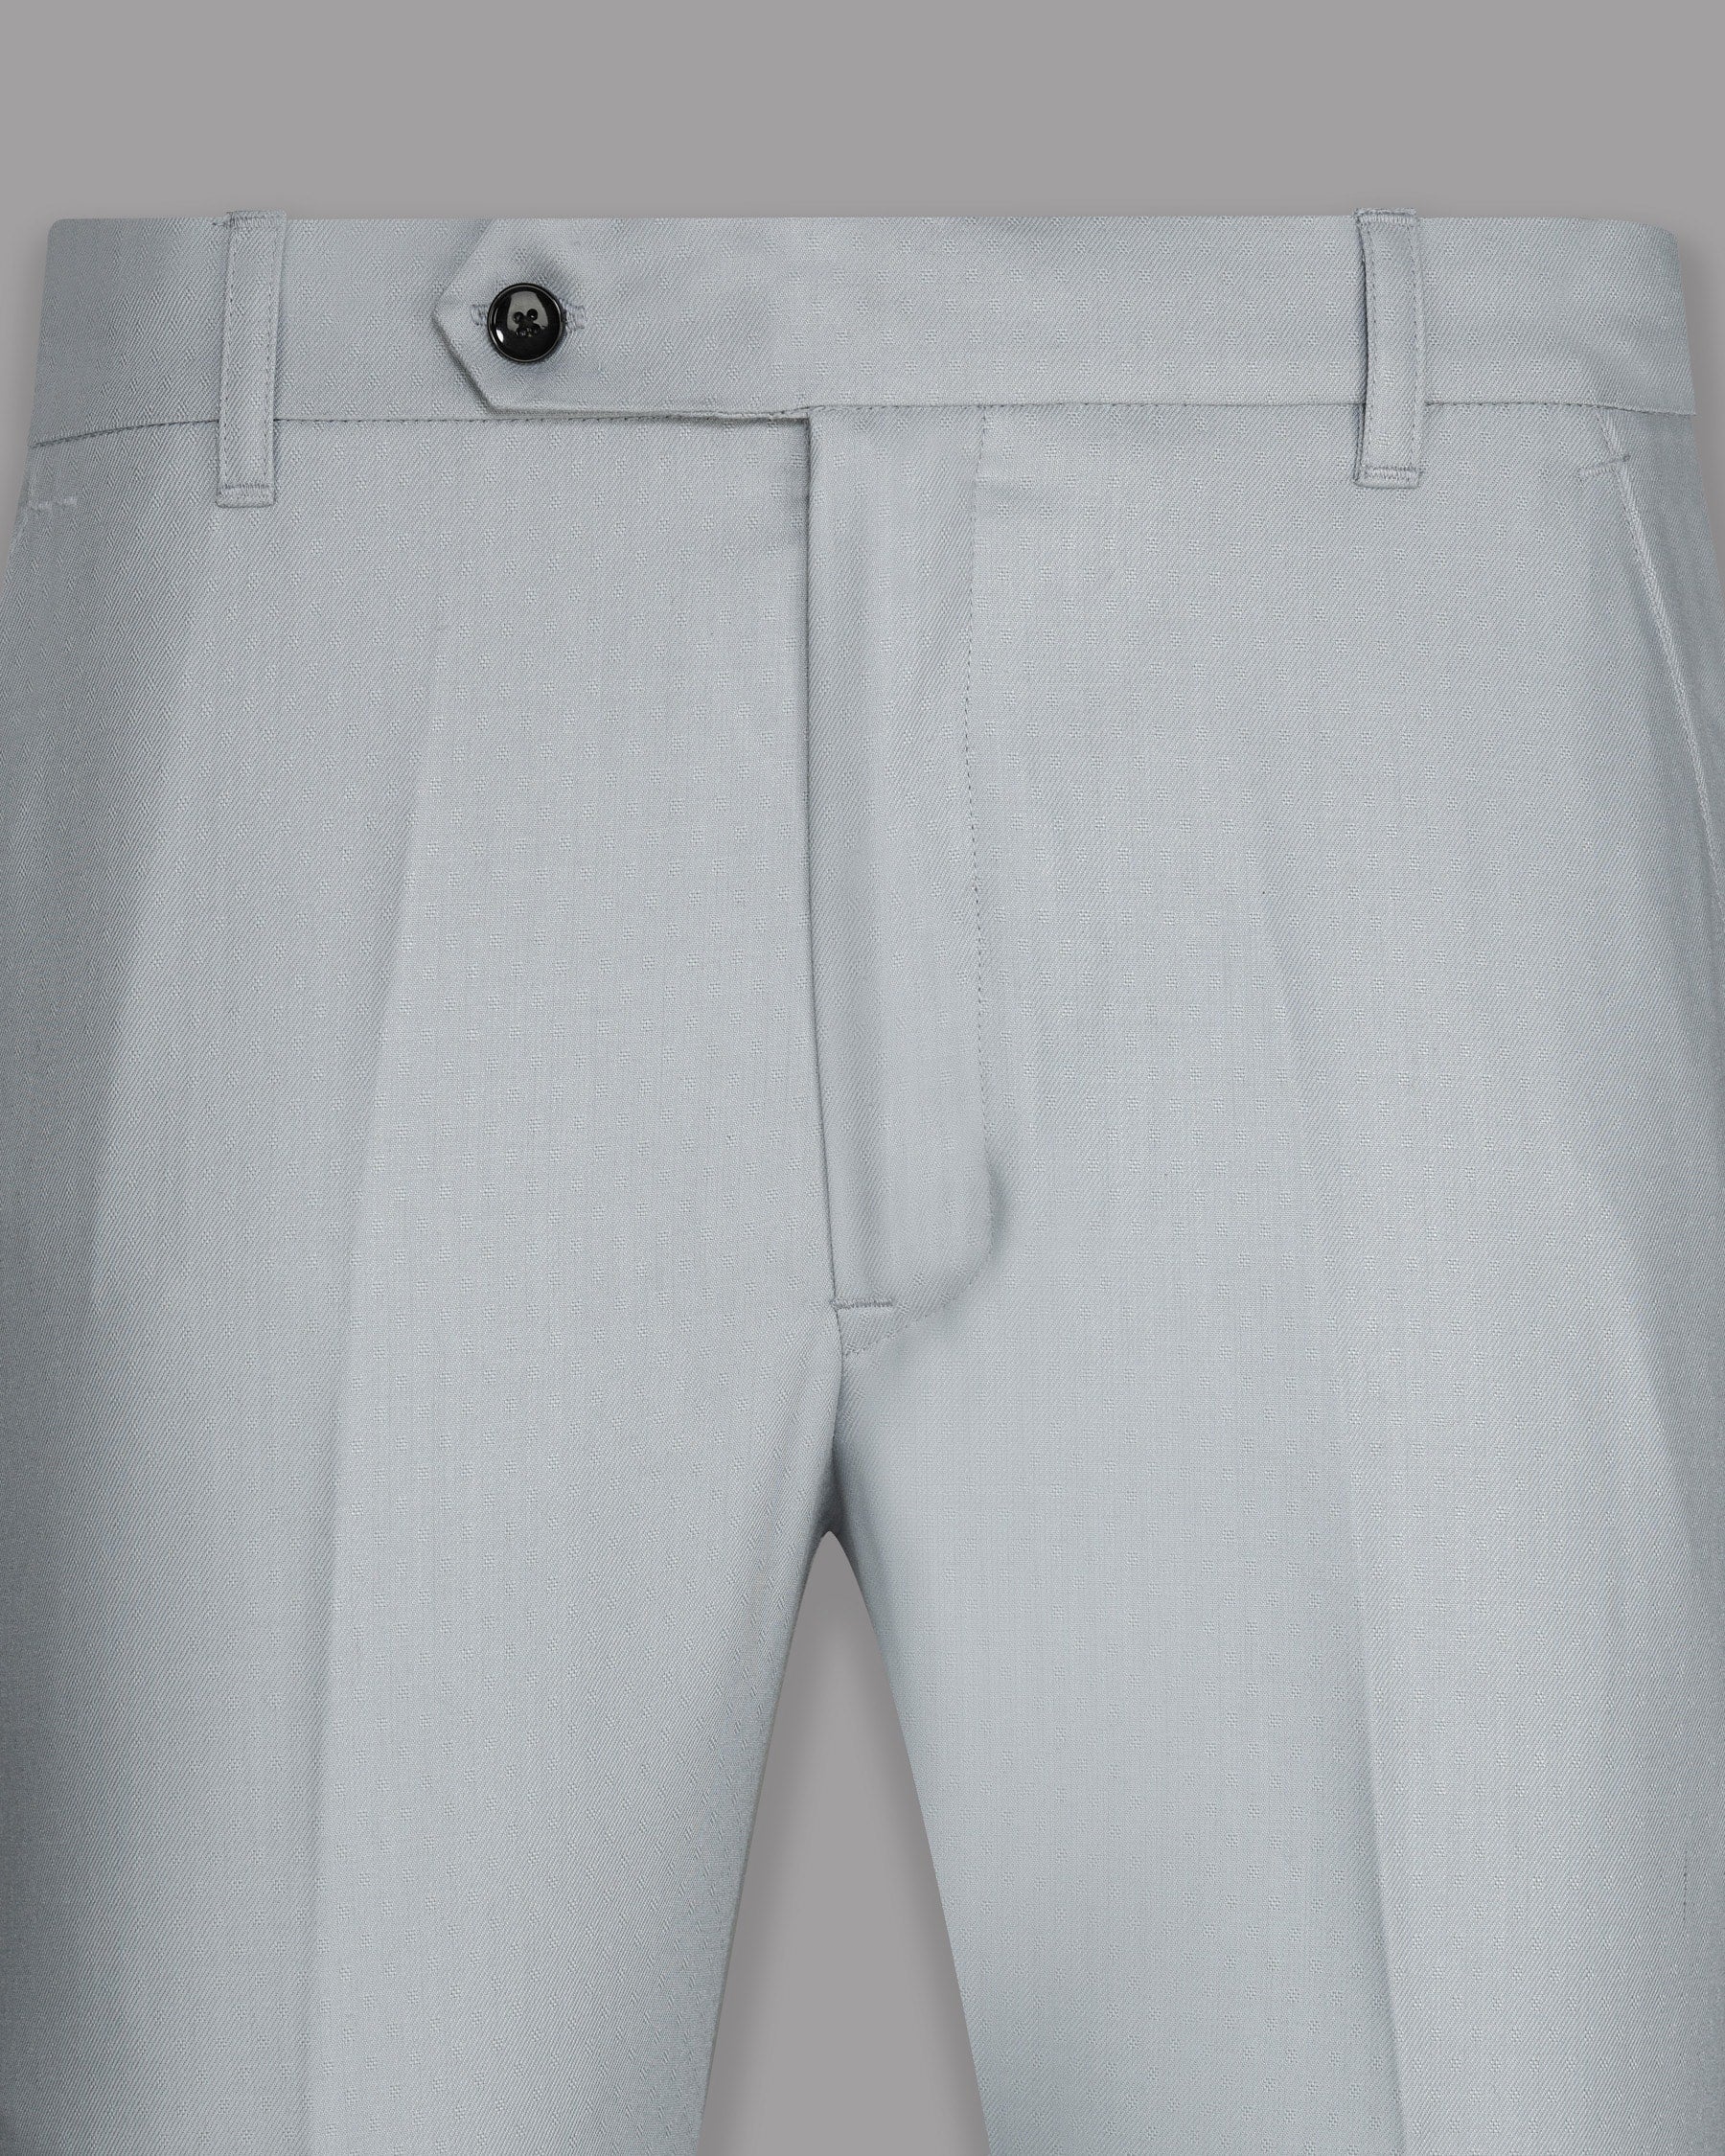 Light Grey Subtle Textured Wool Blend Pant T745-28, T745-38, T745-40, T745-32, T745-30, T745-42, T745-34, T745-44, T745-36